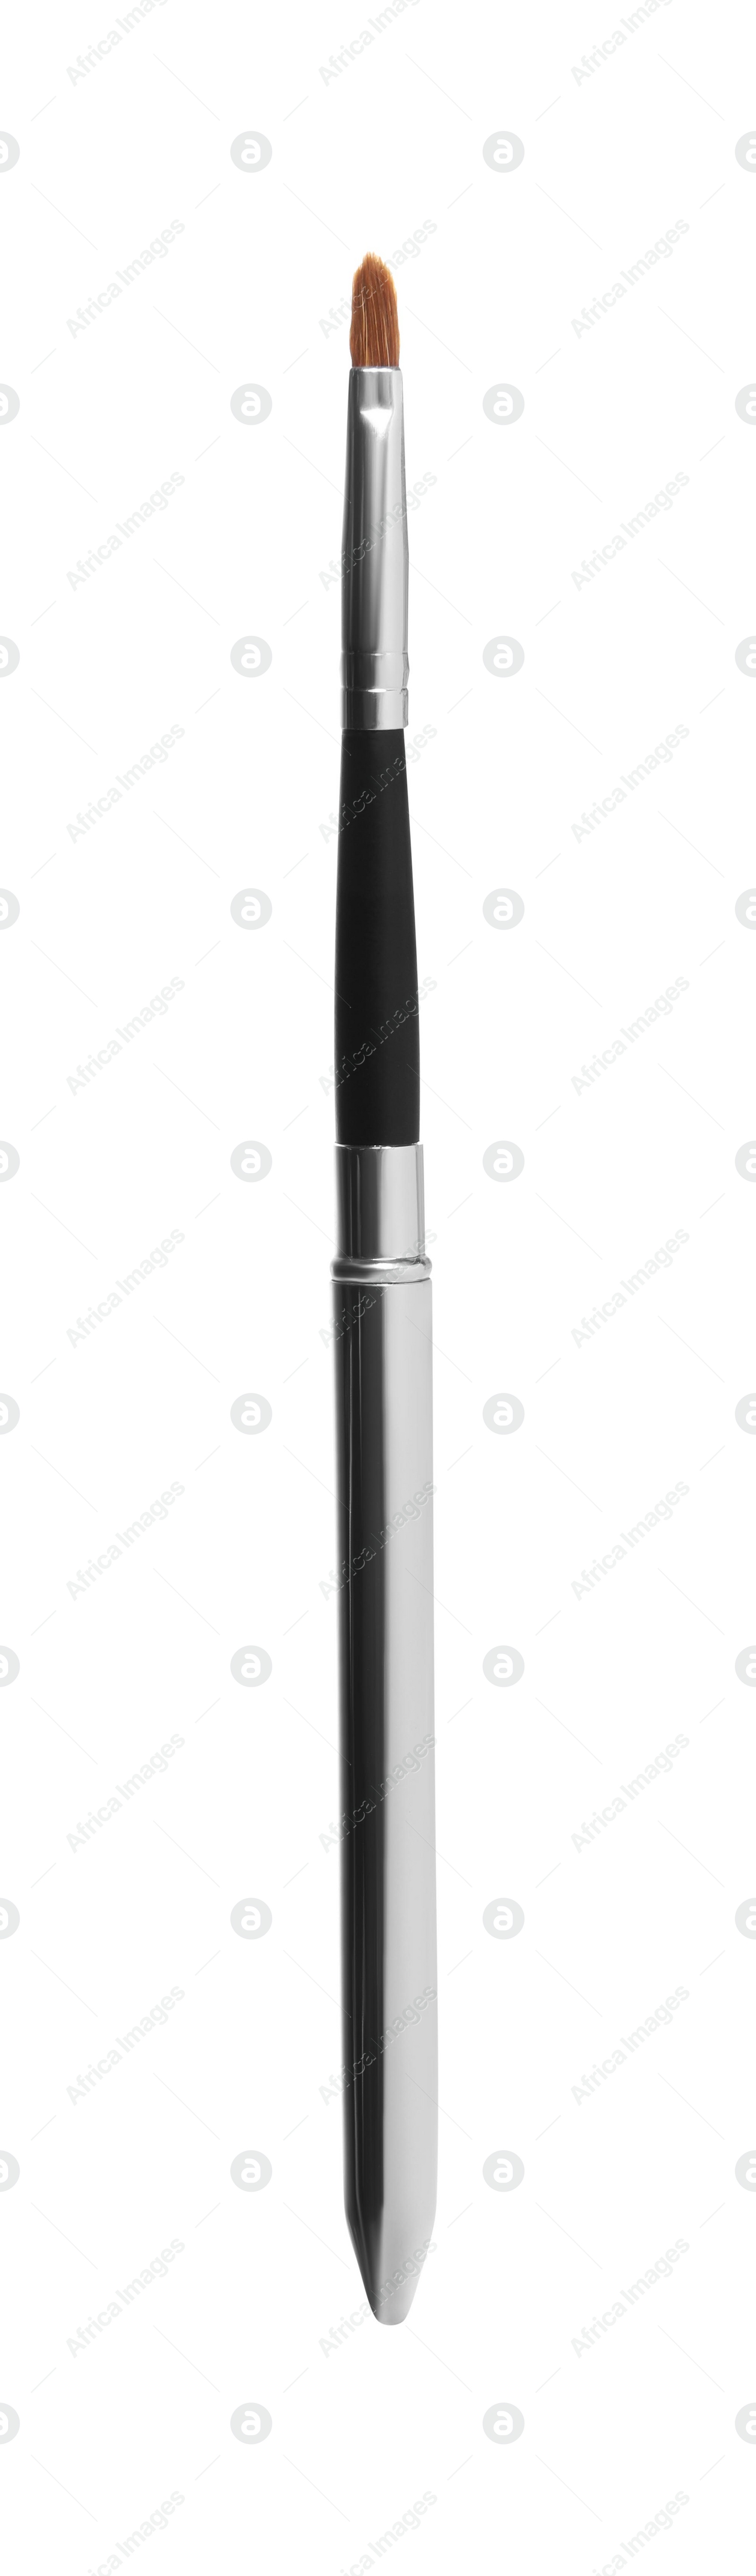 Photo of One stylish makeup brush isolated on white